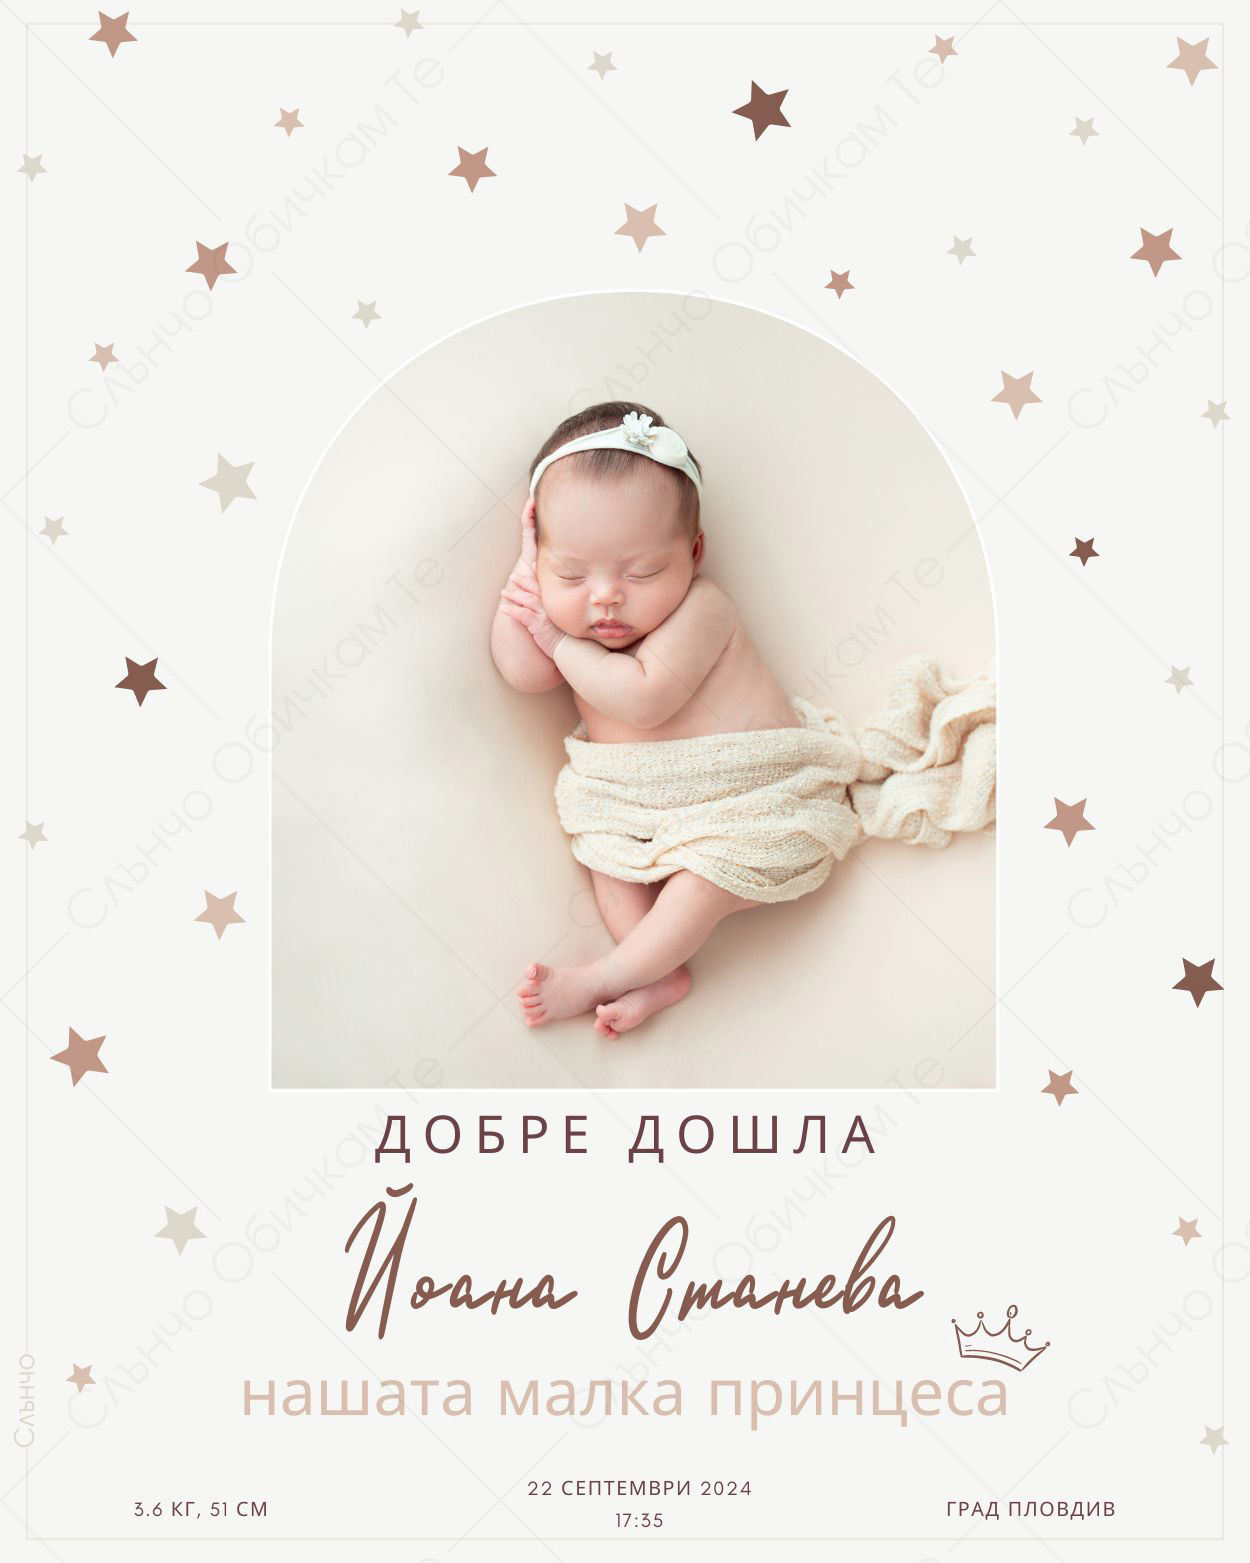 Добре дошло бебе, нашата малка принцеса – Персонализирани картички за обявяване на бебе и бременност – Магазина на Слънчо